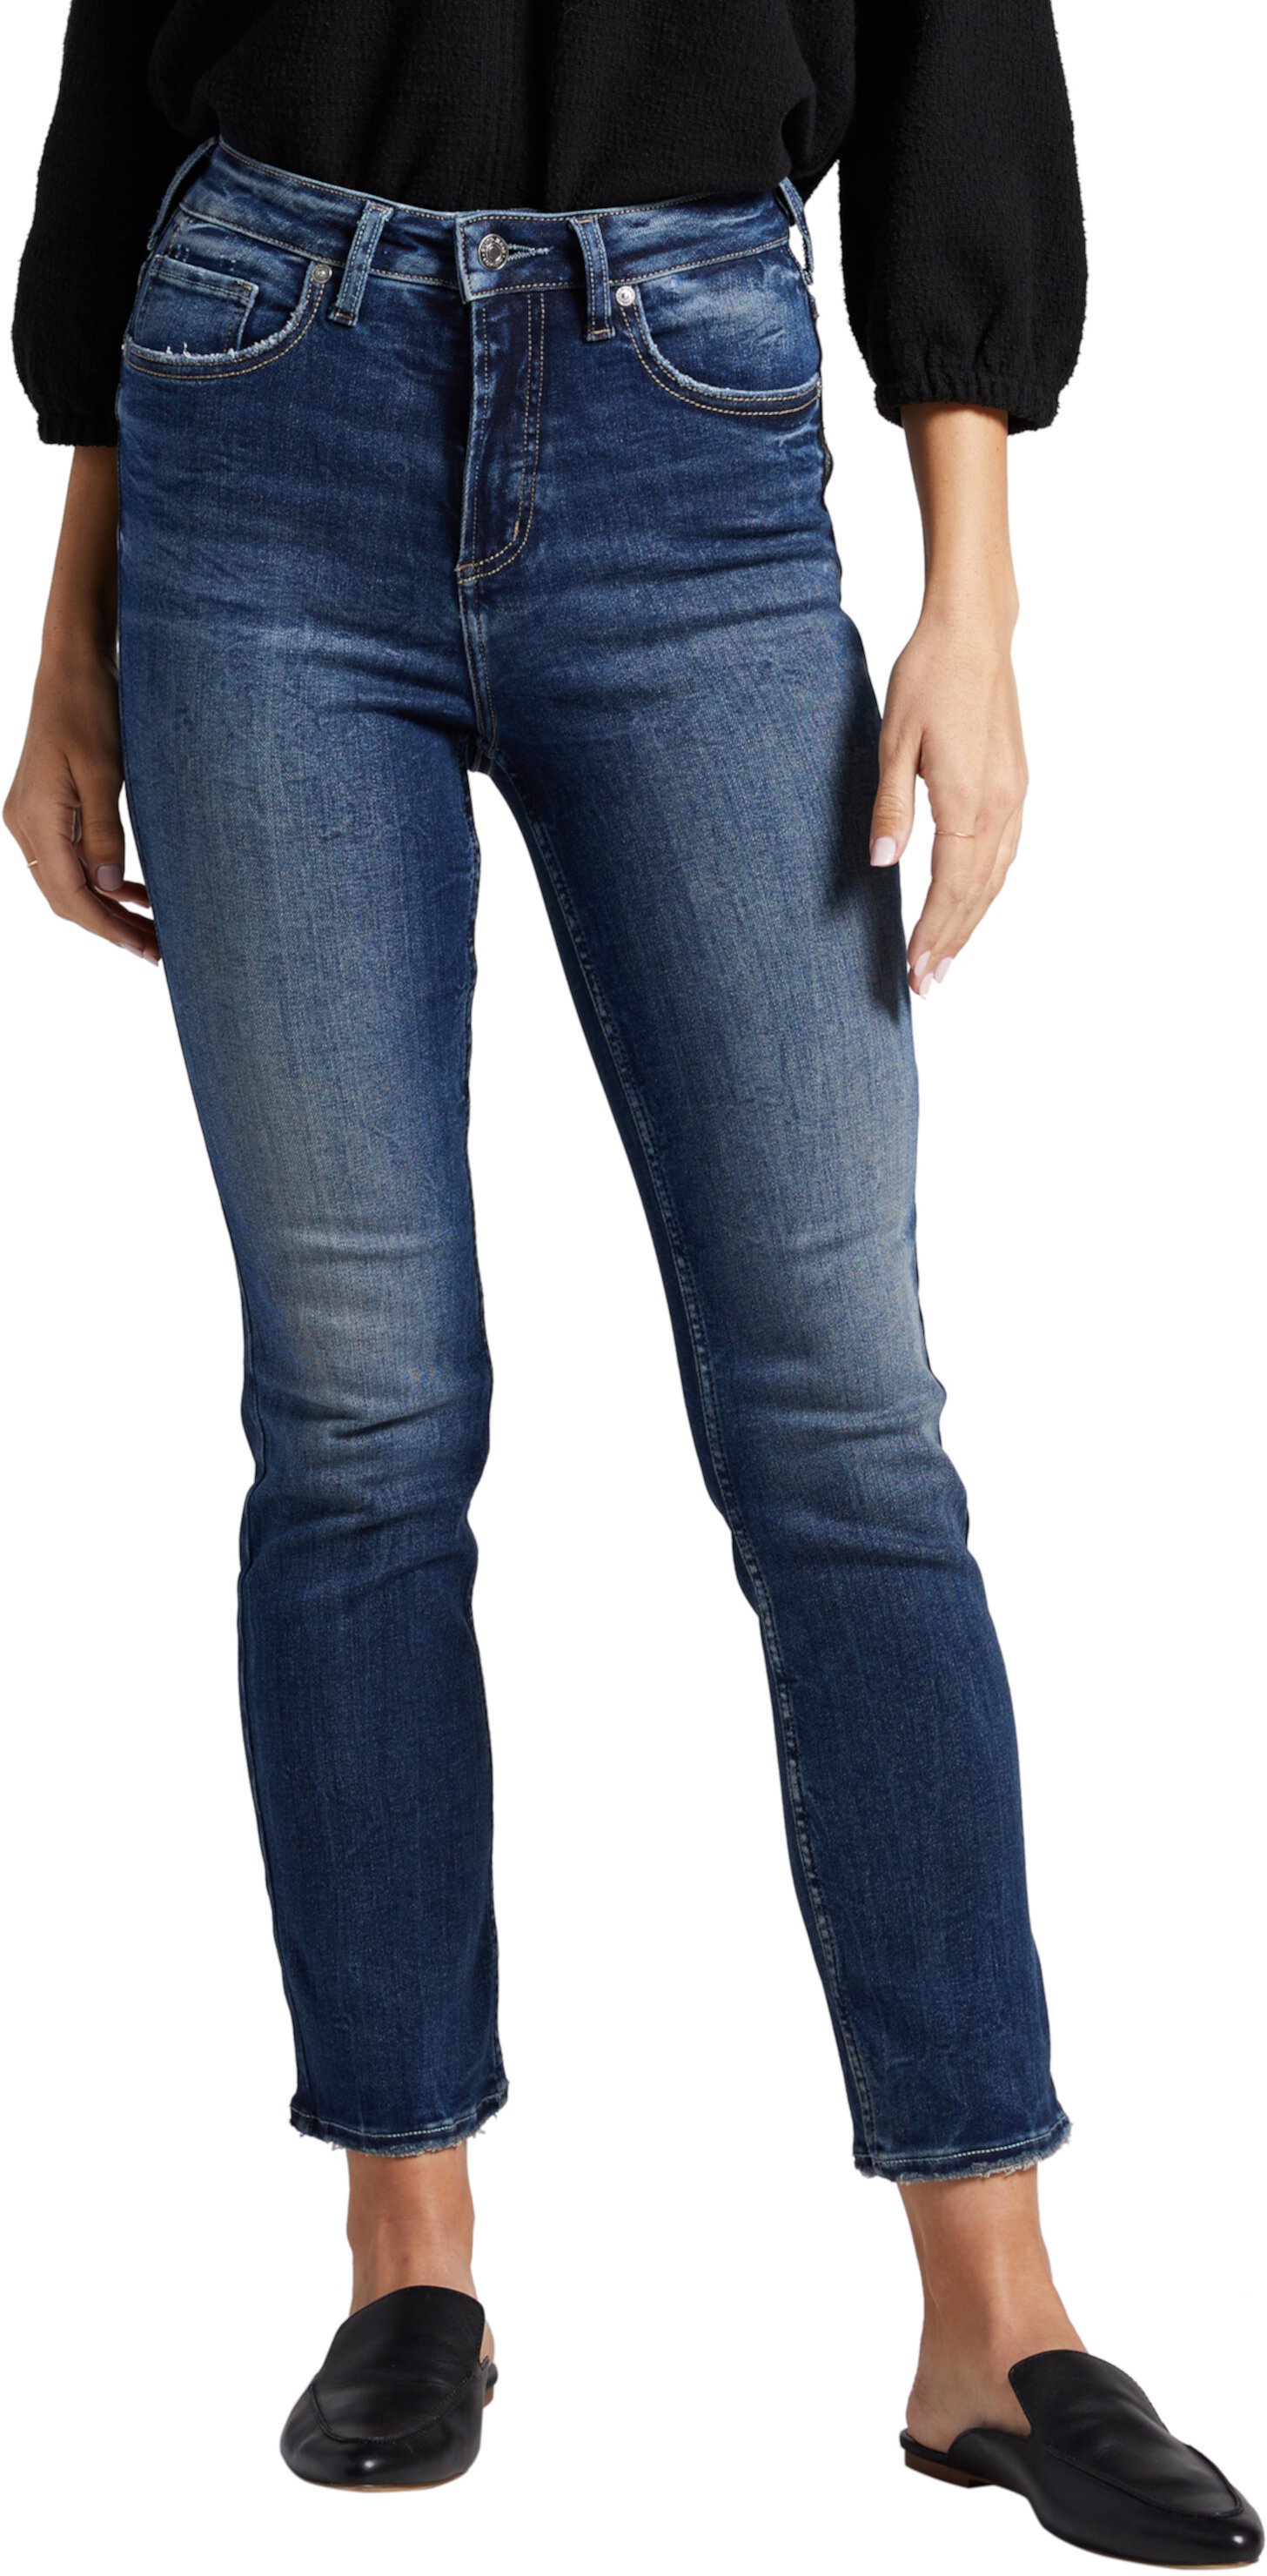 Прямые джинсы с высокой посадкой Infinite Fit L88410INF339 Silver Jeans Co.